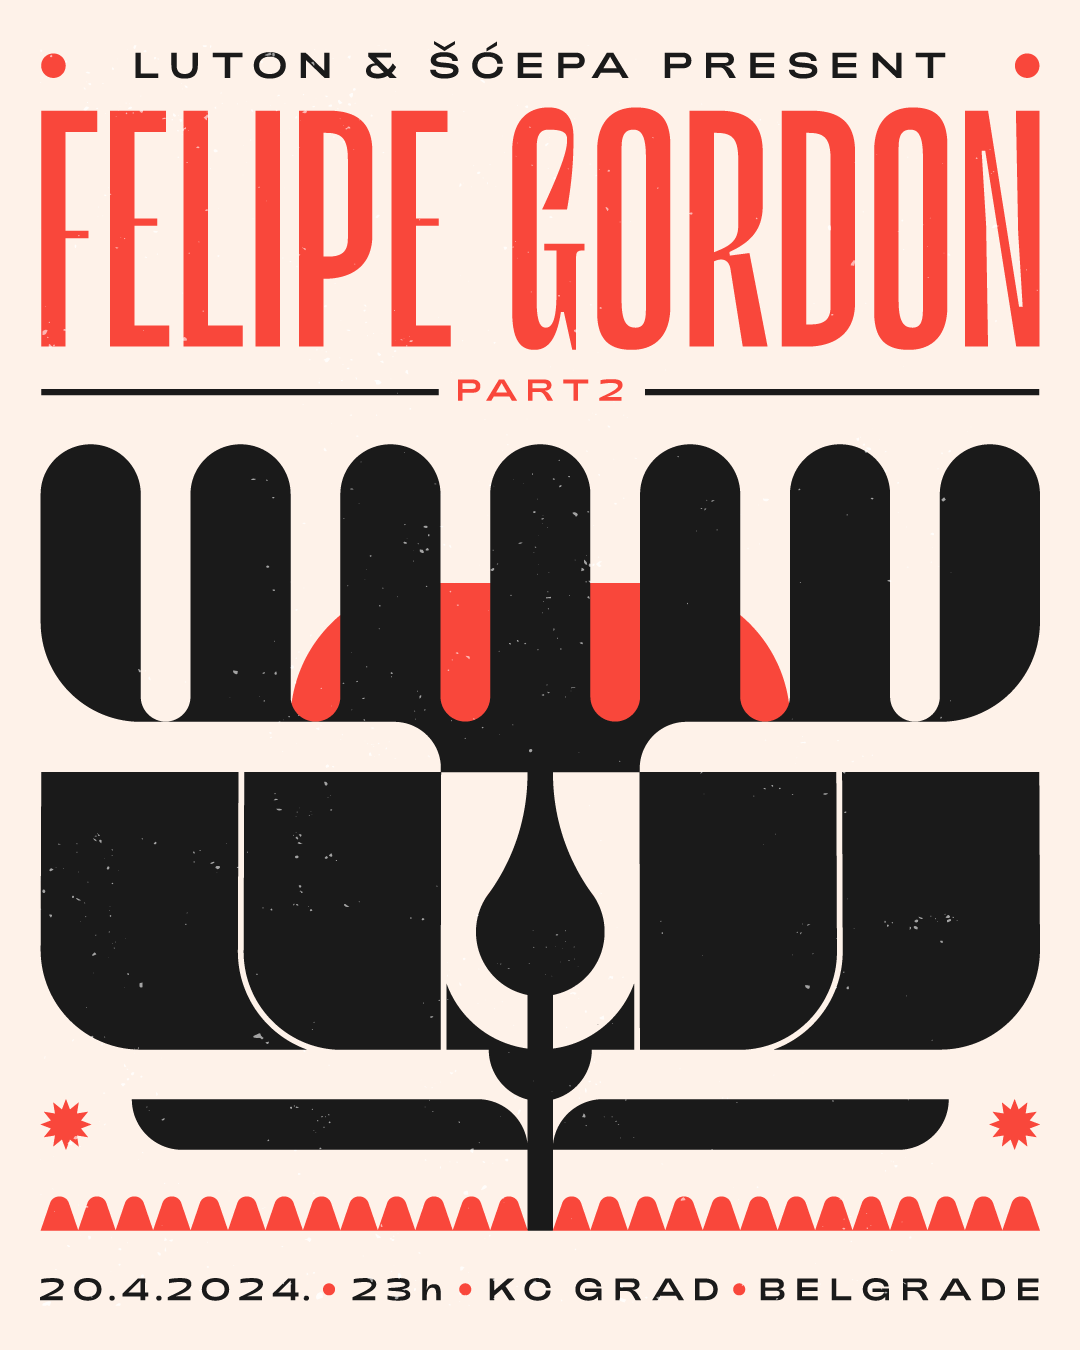 Scepa & Luton present Felipe Gordon - Página frontal